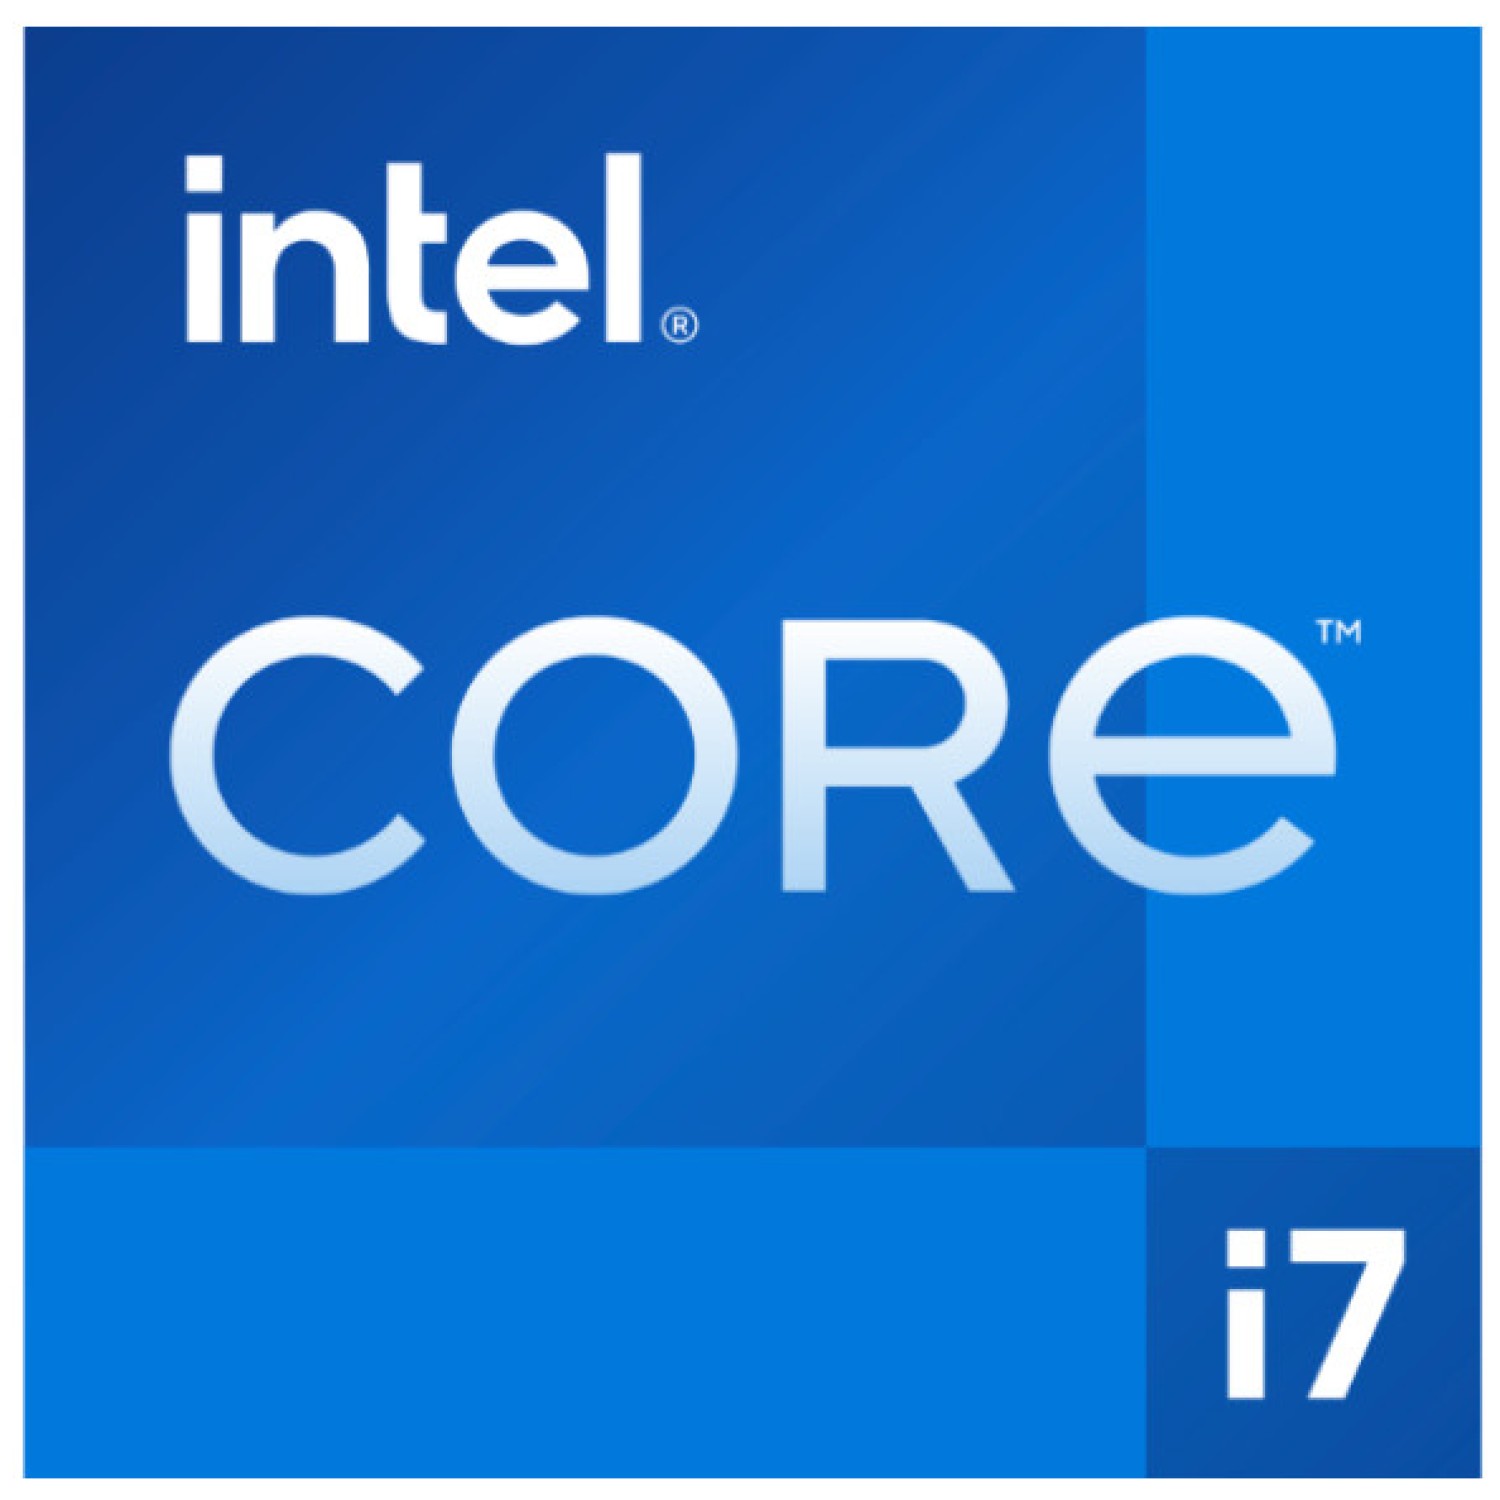 Procesor Intel 1700 Core i7 13700KF 16C/24T 2.5GHz/5.4GHz tray 125W/253W - brez grafike in hladilnika